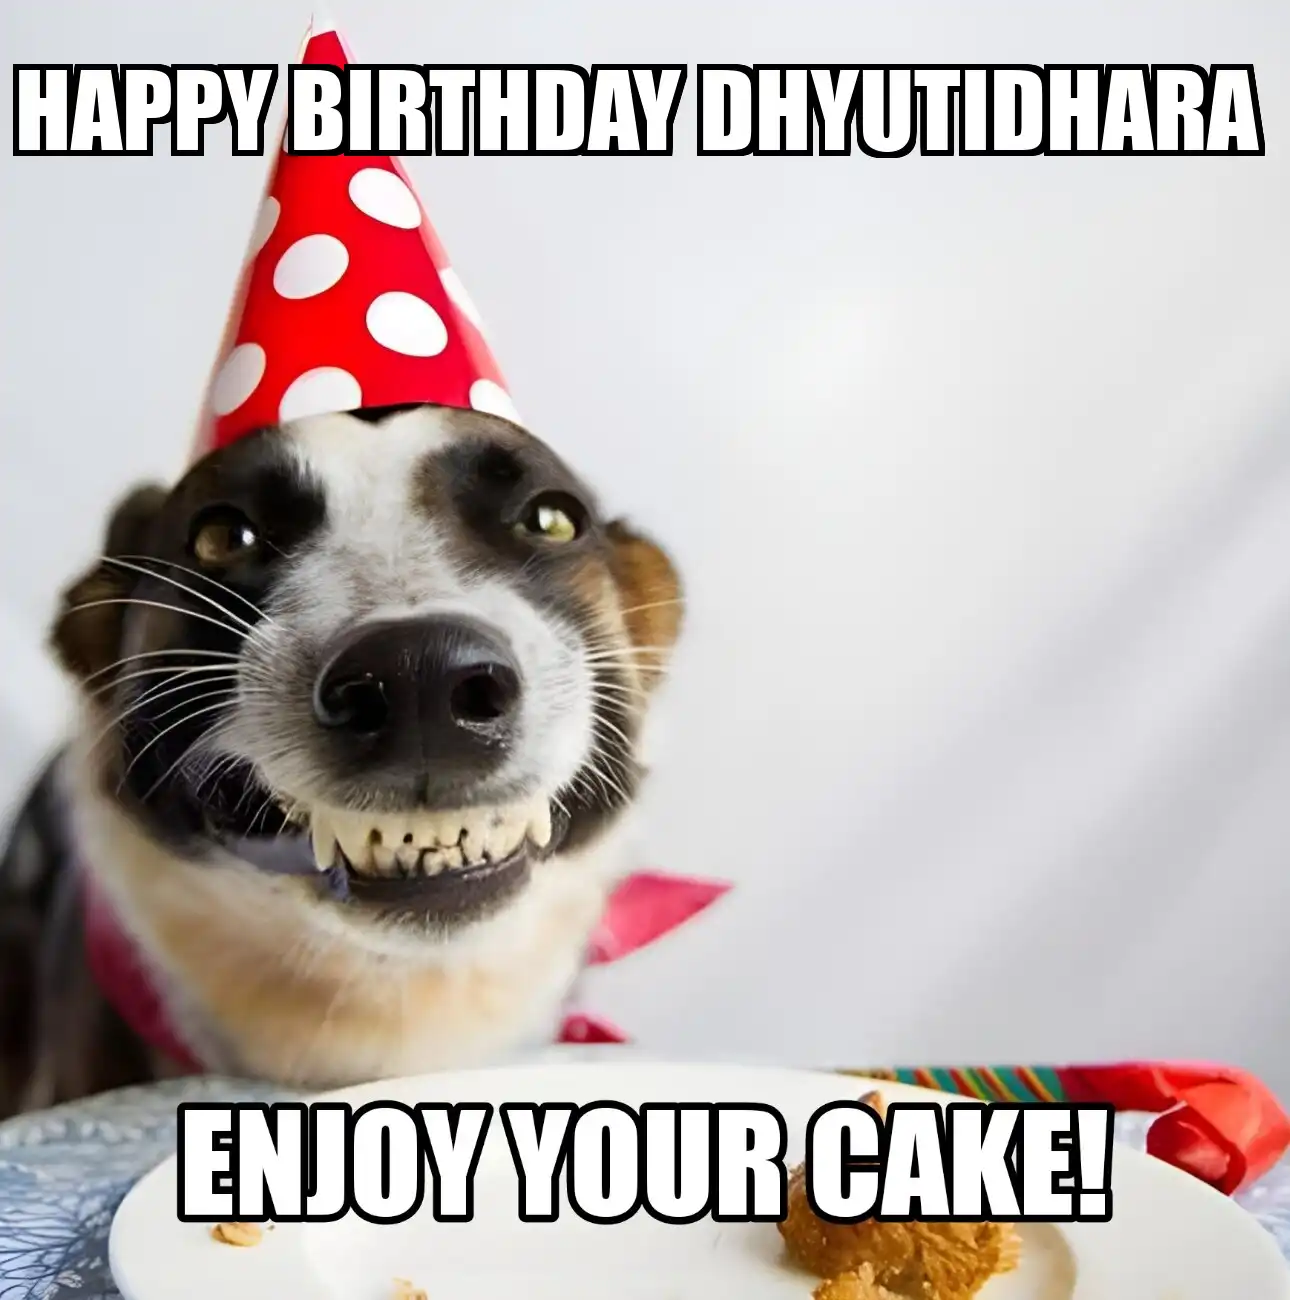 Happy Birthday Dhyutidhara Enjoy Your Cake Dog Meme